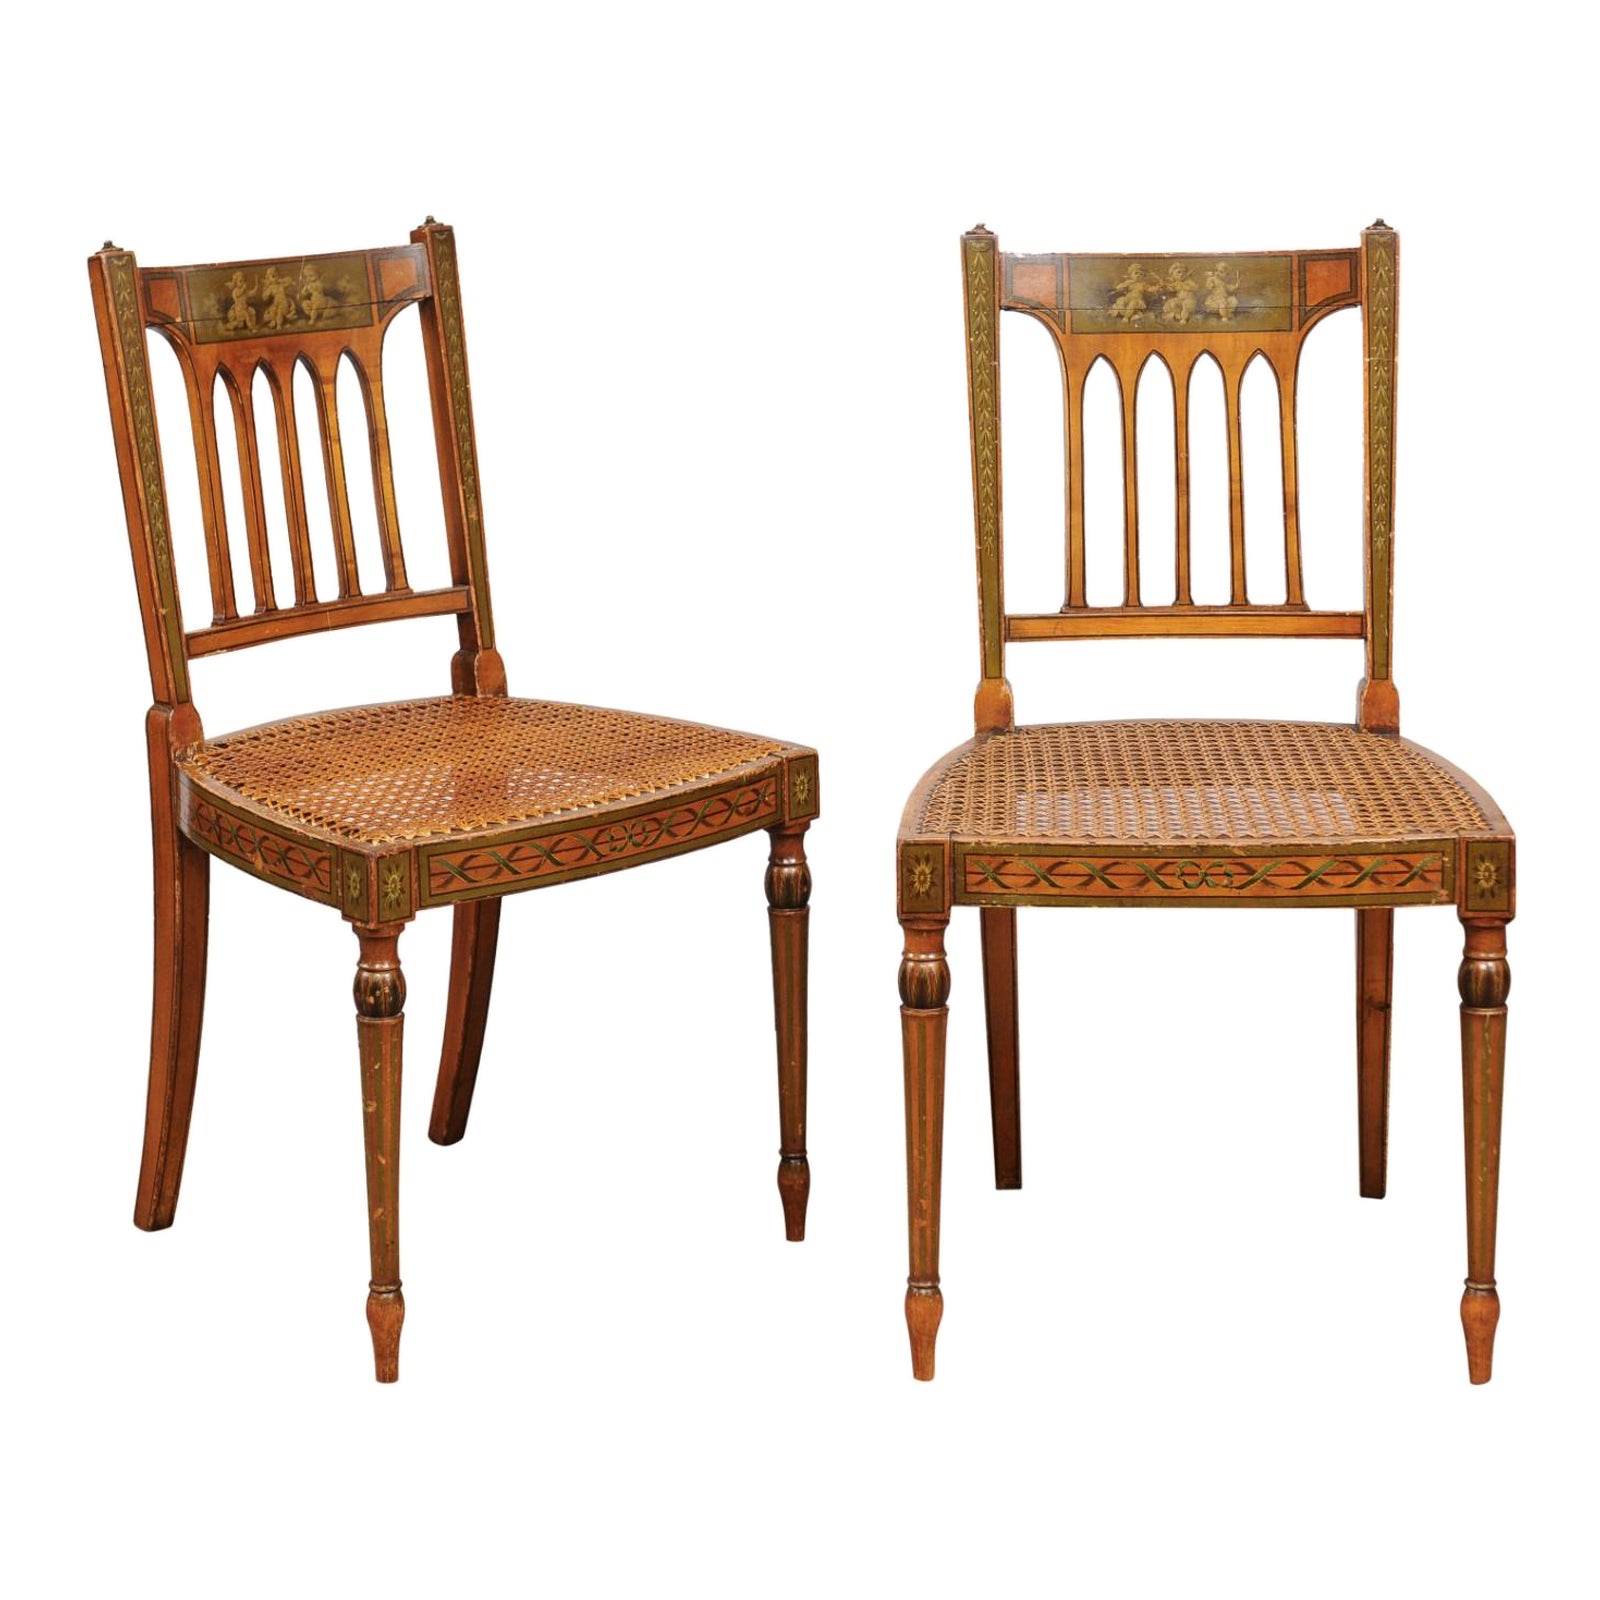 Paar Beistellstühle aus Seidenholz mit Grisaille-bemalten Rückenlehnen, George III.-Stil